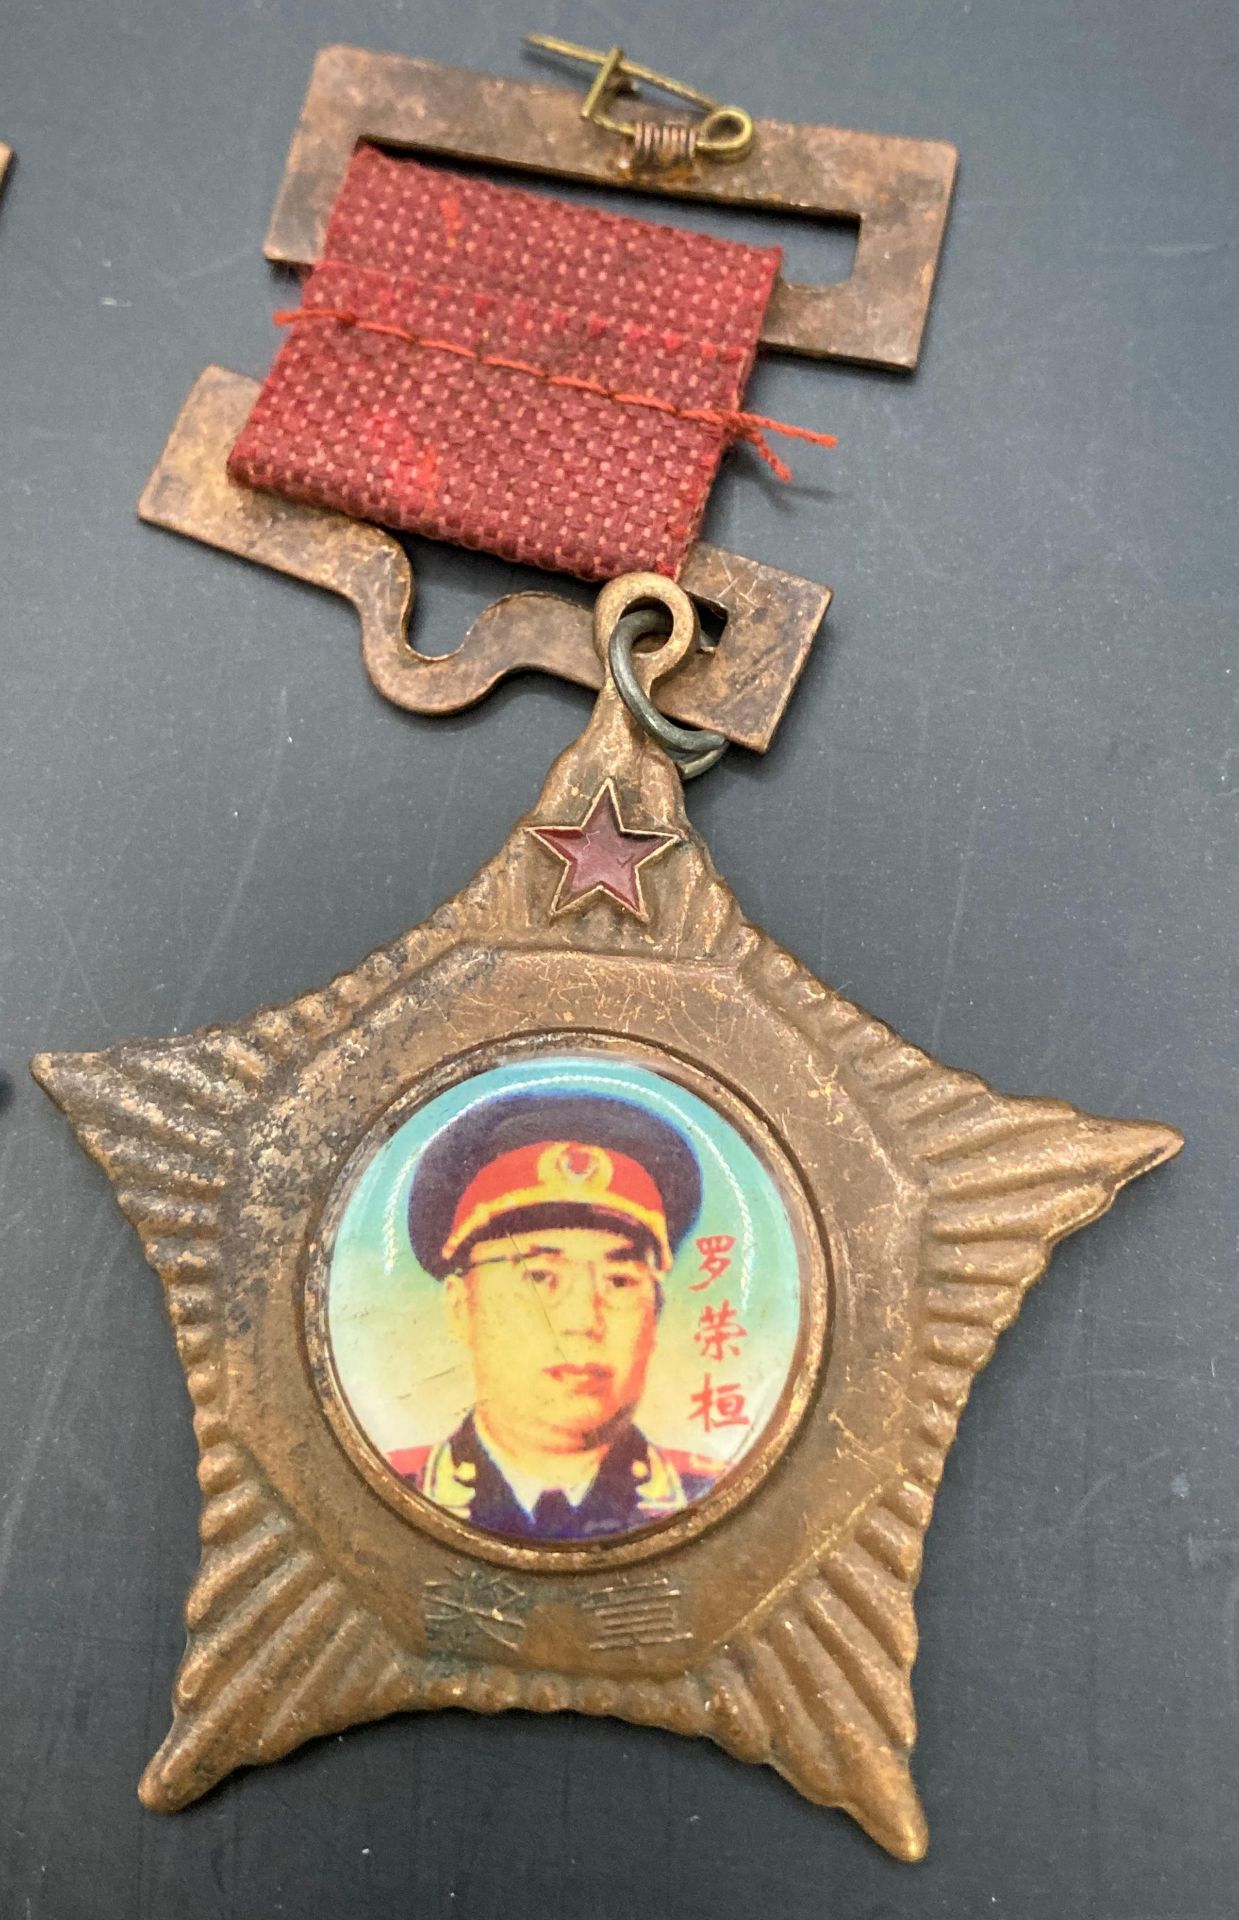 Seven Chinese 'Ten Generals' medals (Saleroom location: S33 GC4) - Image 5 of 6